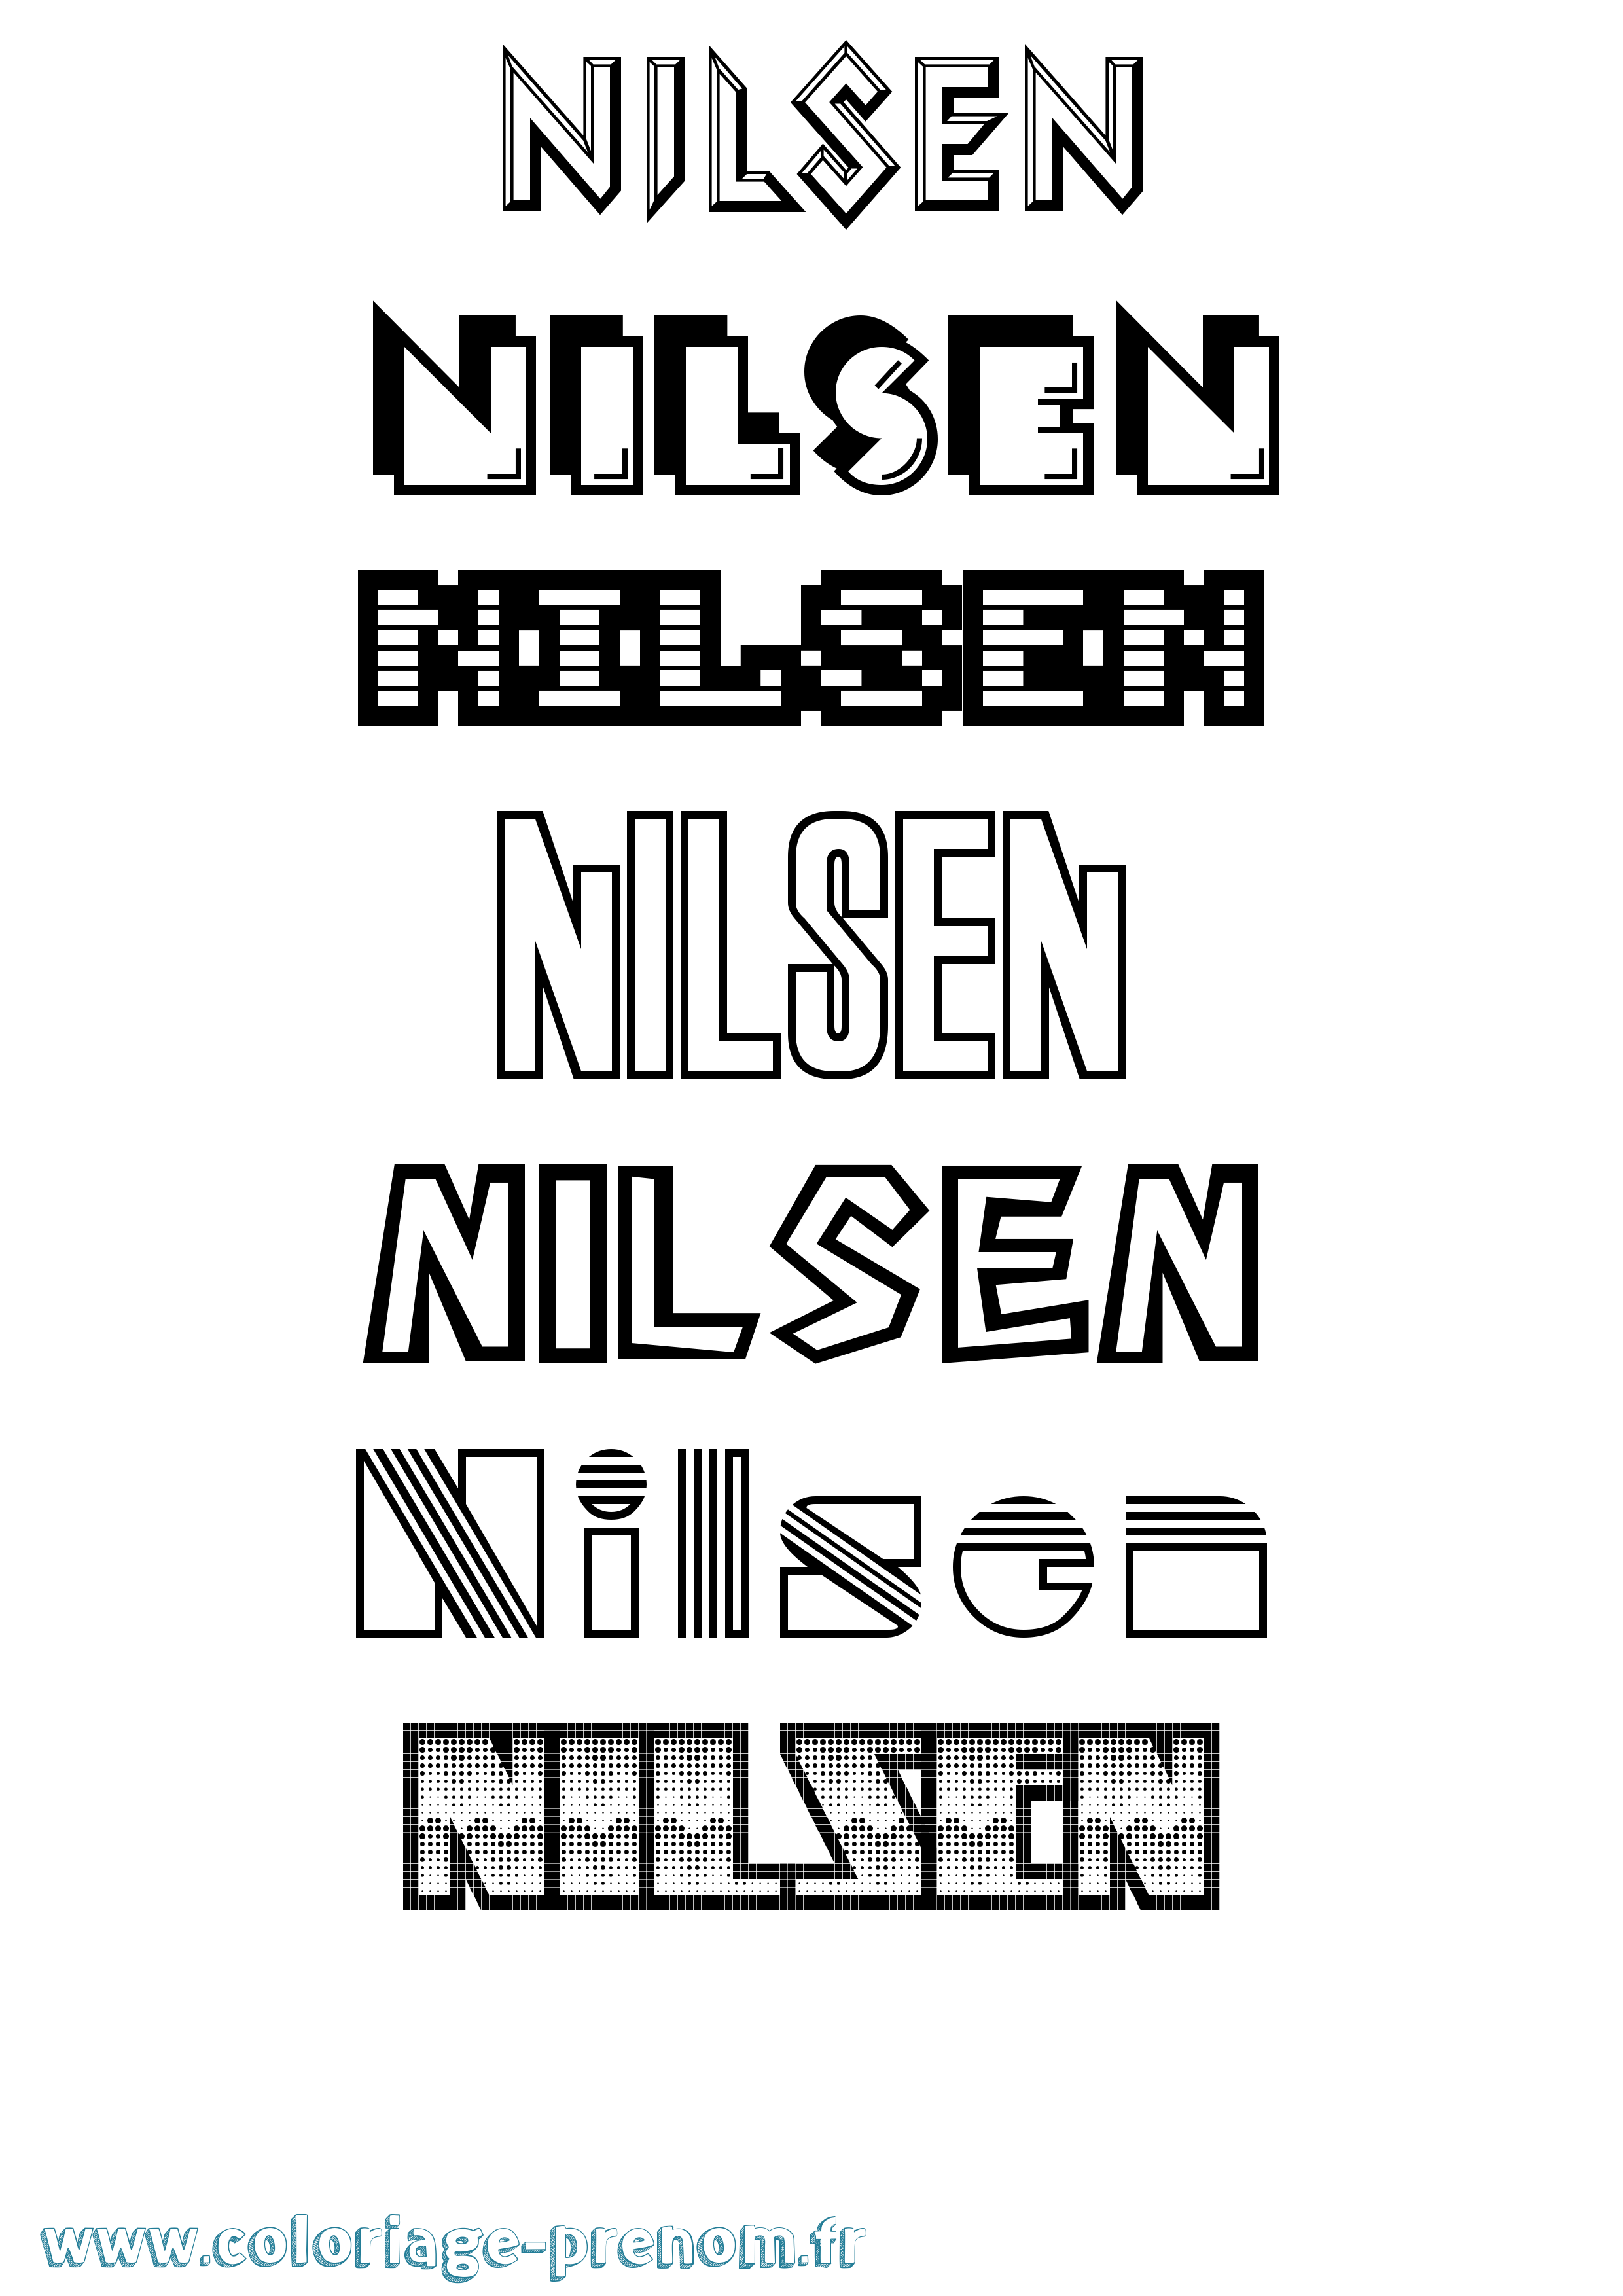 Coloriage prénom Nilsen Jeux Vidéos